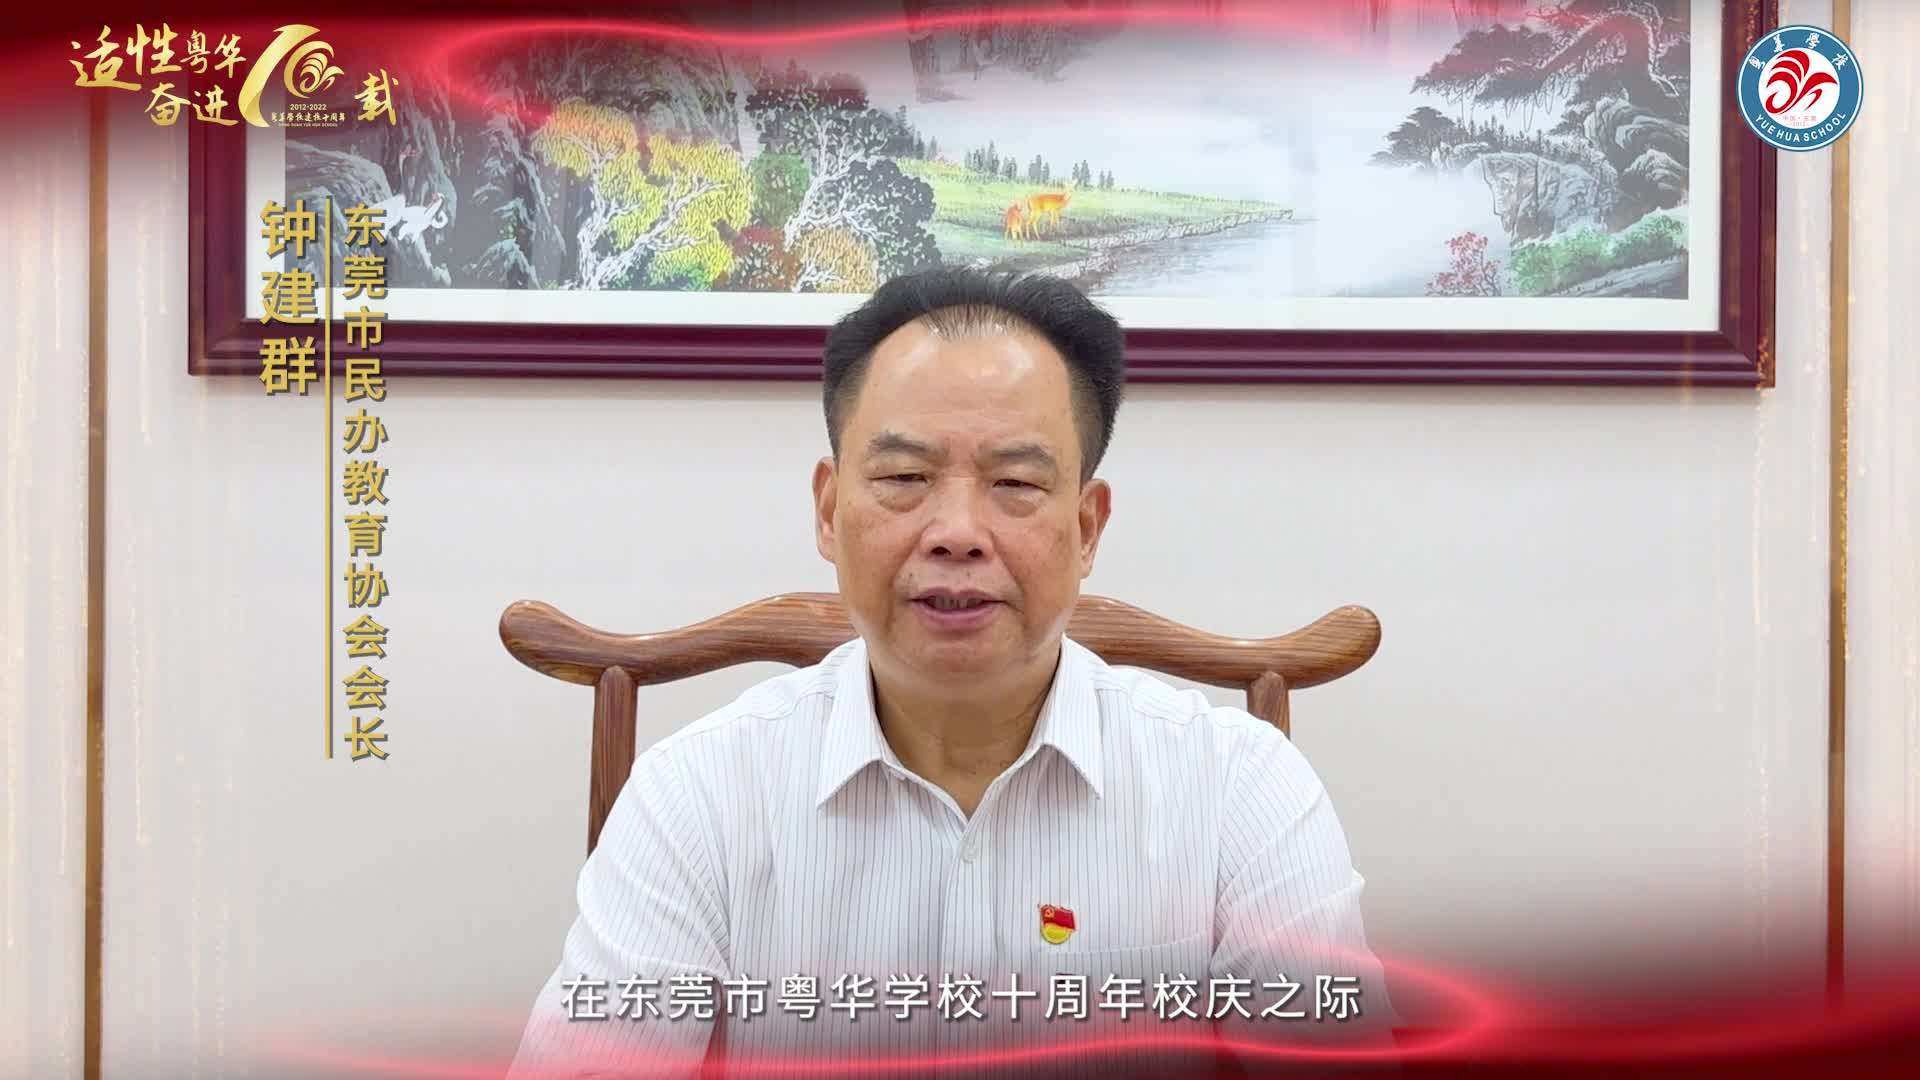 粤华学校十周年校庆祝福视频